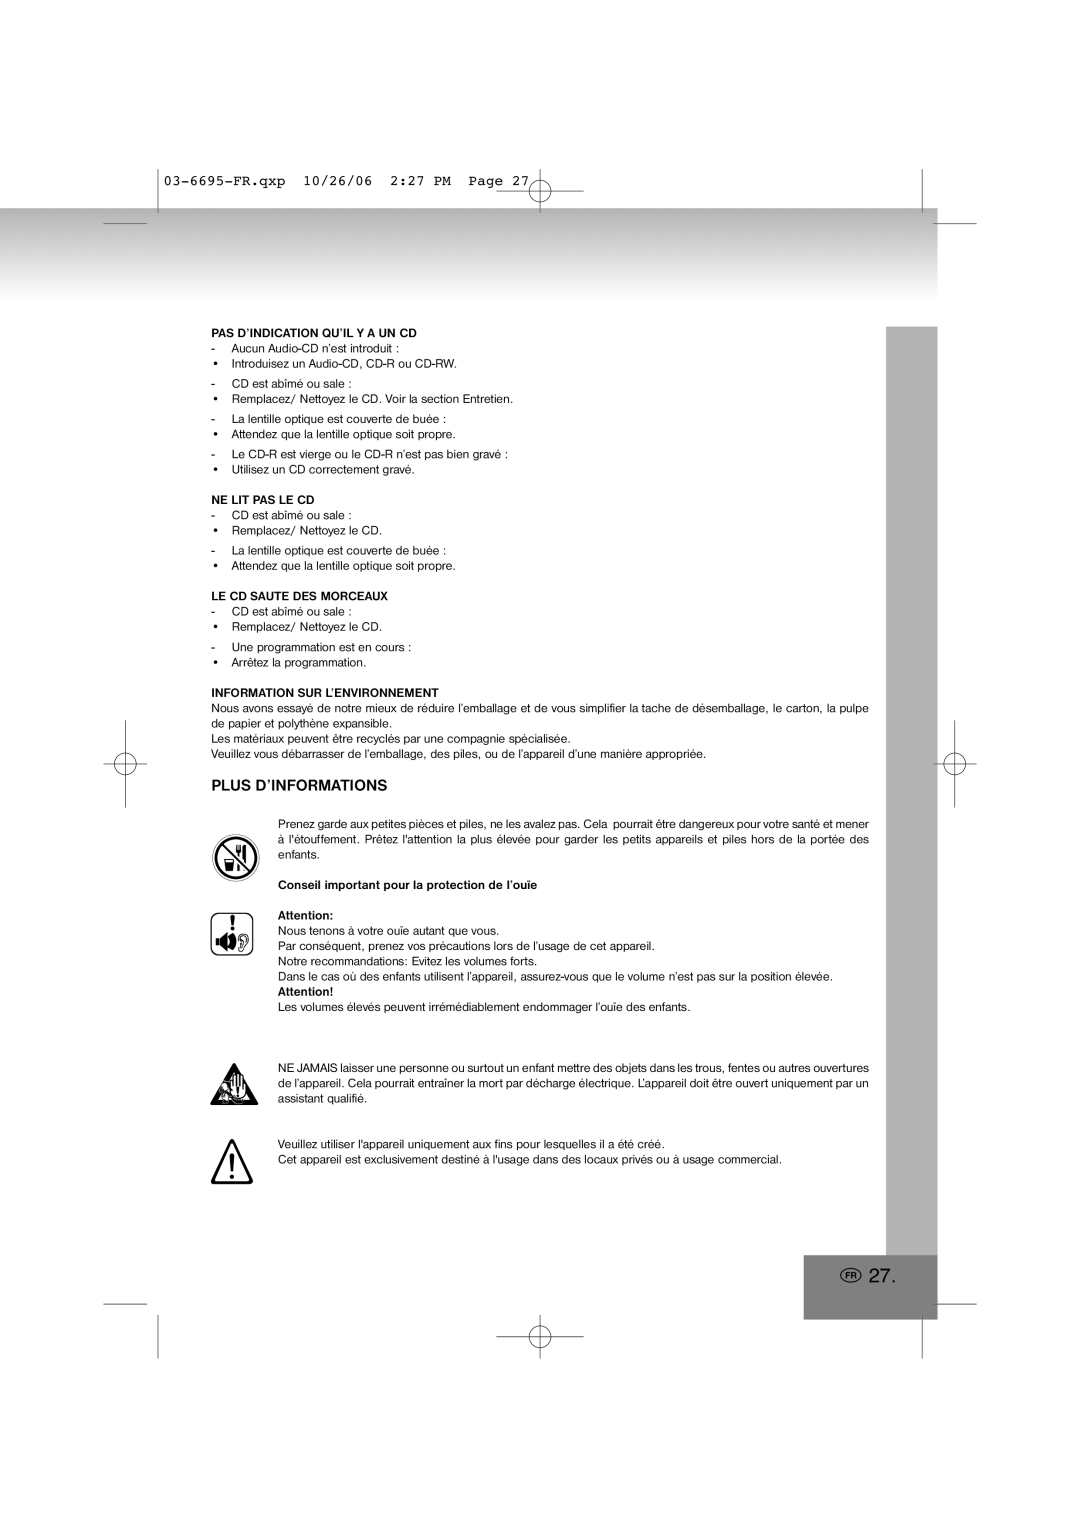 Elta manual Plus D’Informations, 03-6695-FR.qxp10/26/06 2 27 PM Page 